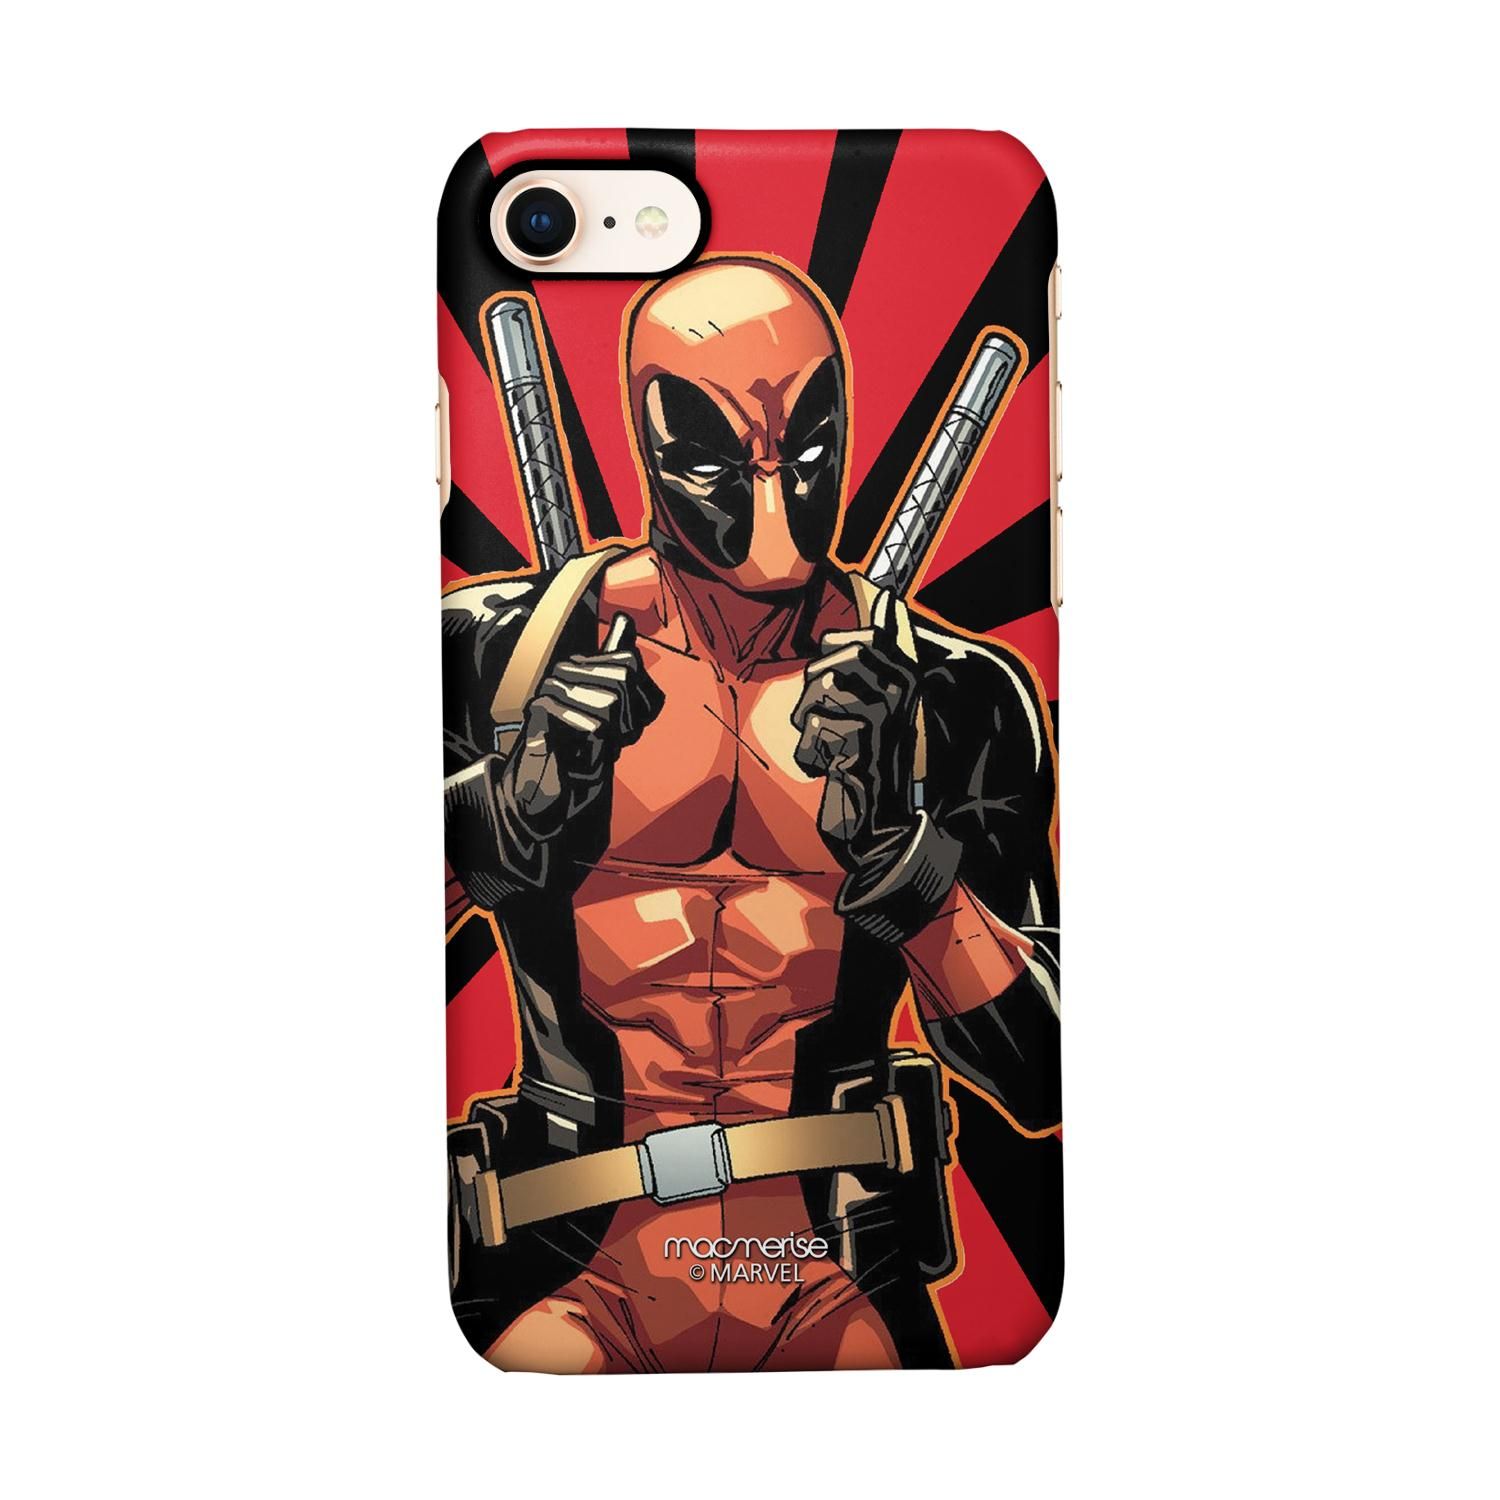 Buy Smart Ass Deadpool - Sleek Phone Case for iPhone 7 Online